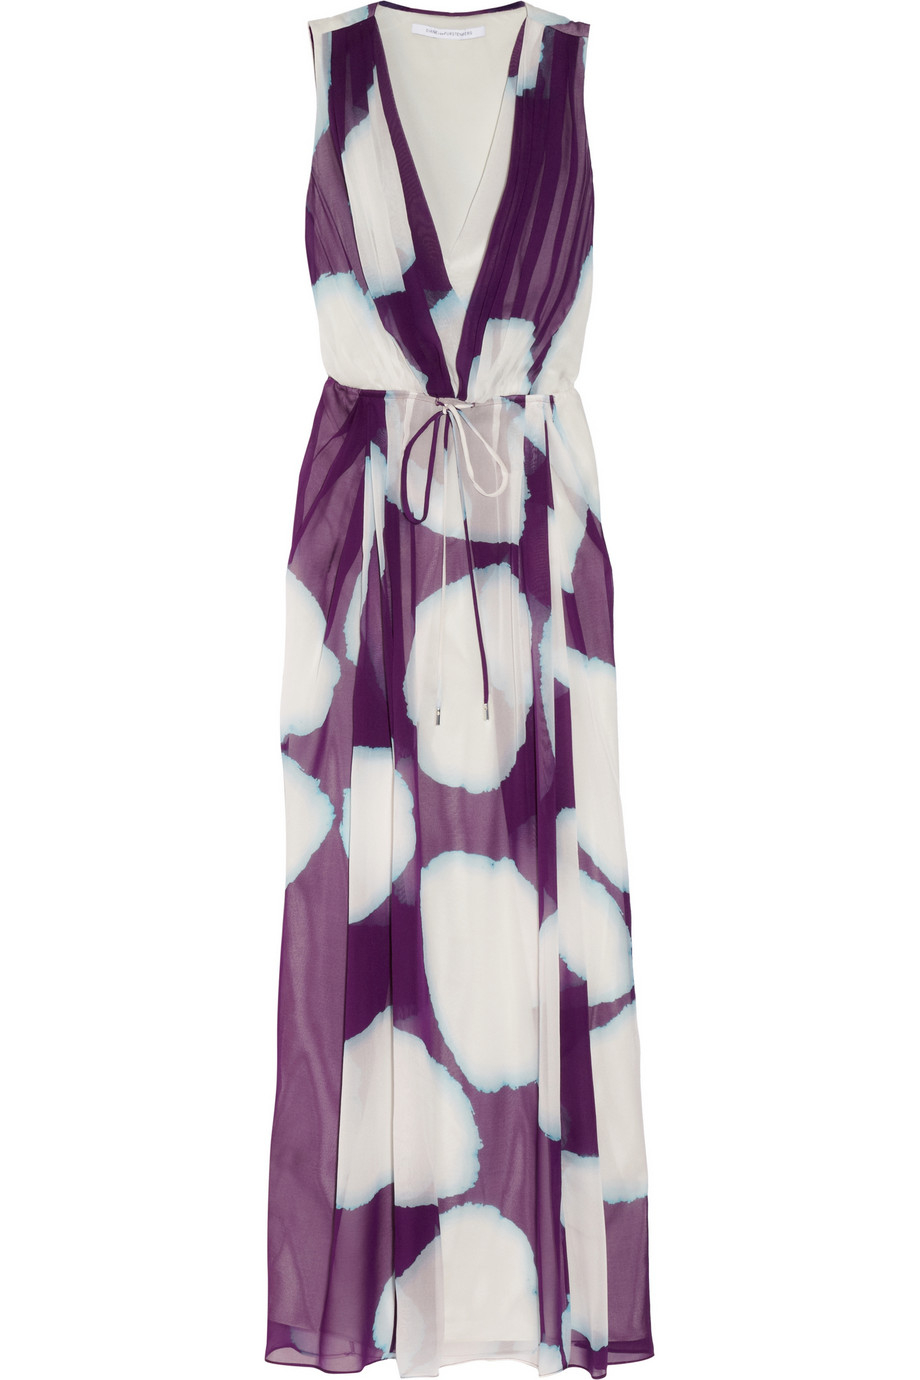 Diane von furstenberg Hailey Printed Silkchiffon Maxi Dress in White | Lyst